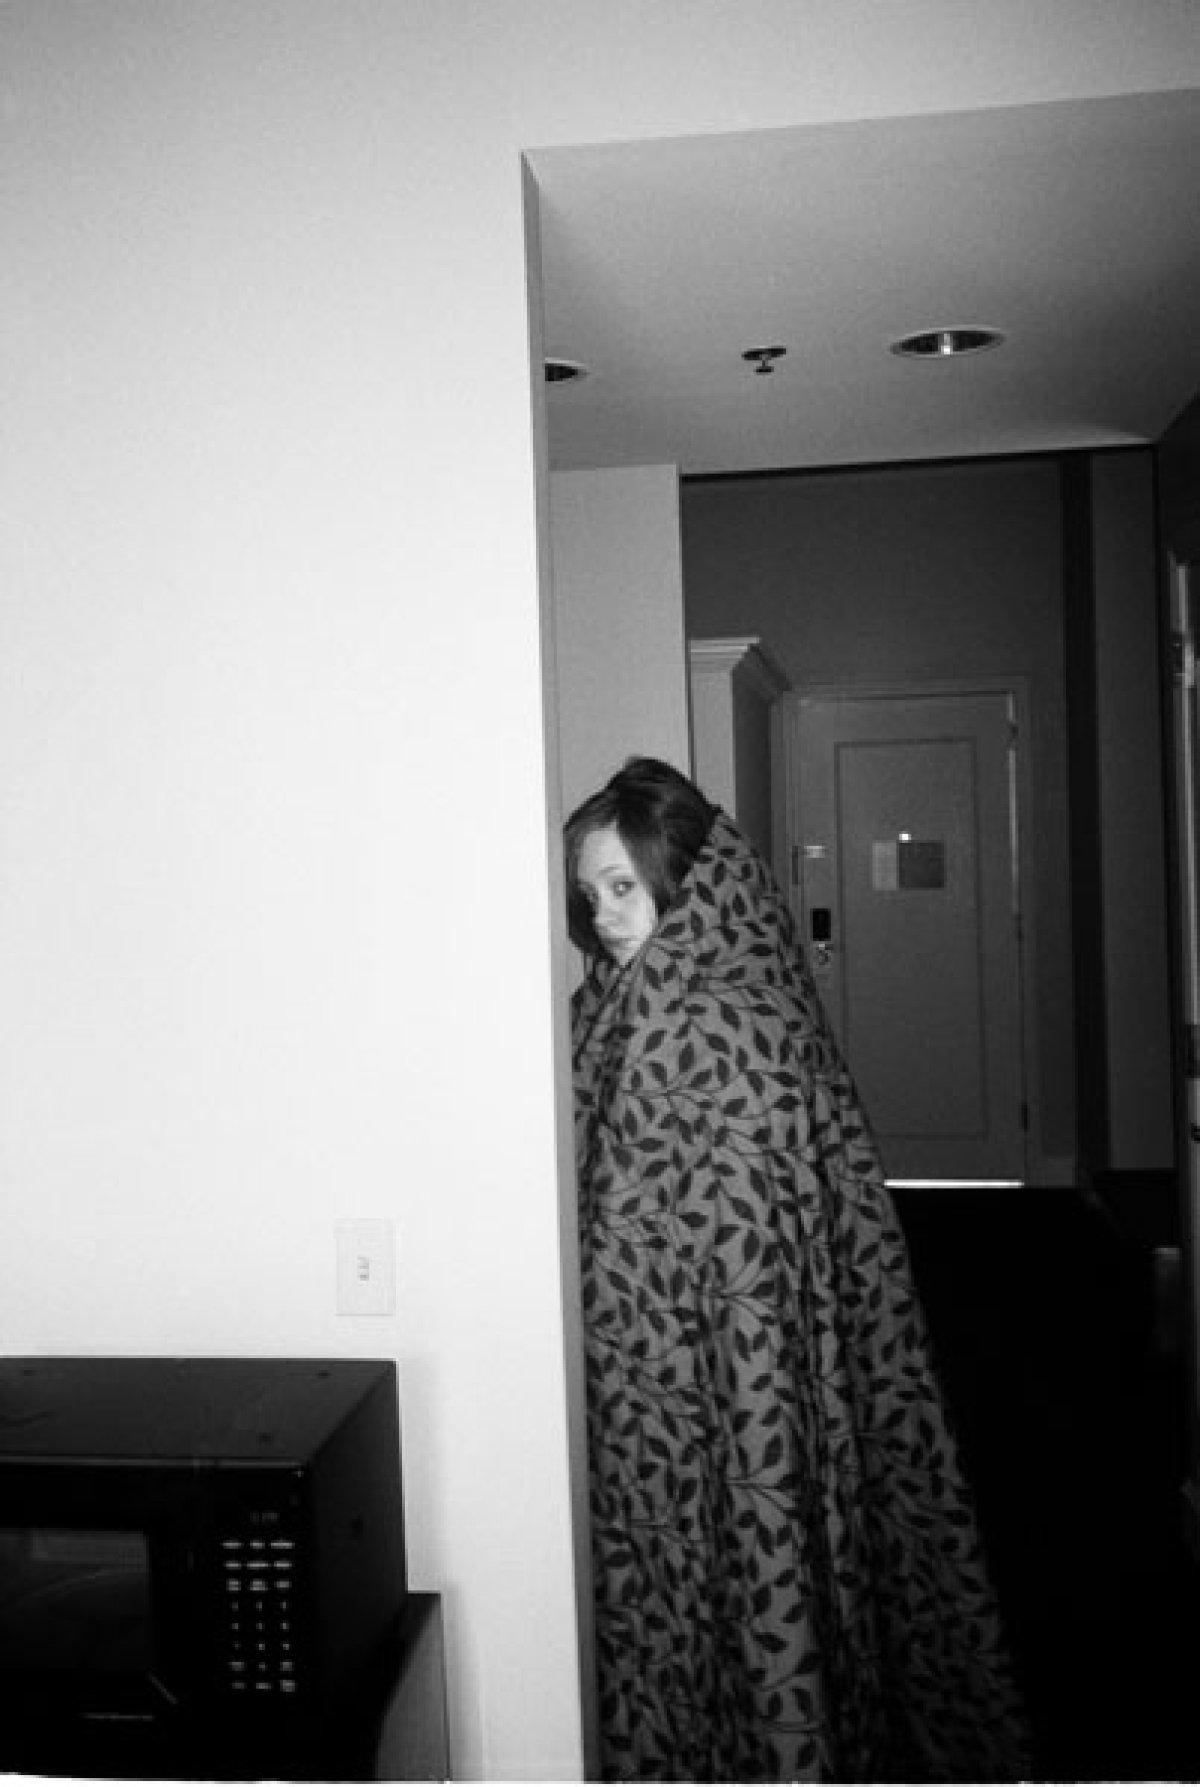 Expareja de Adele publica fotos íntimas de la artista